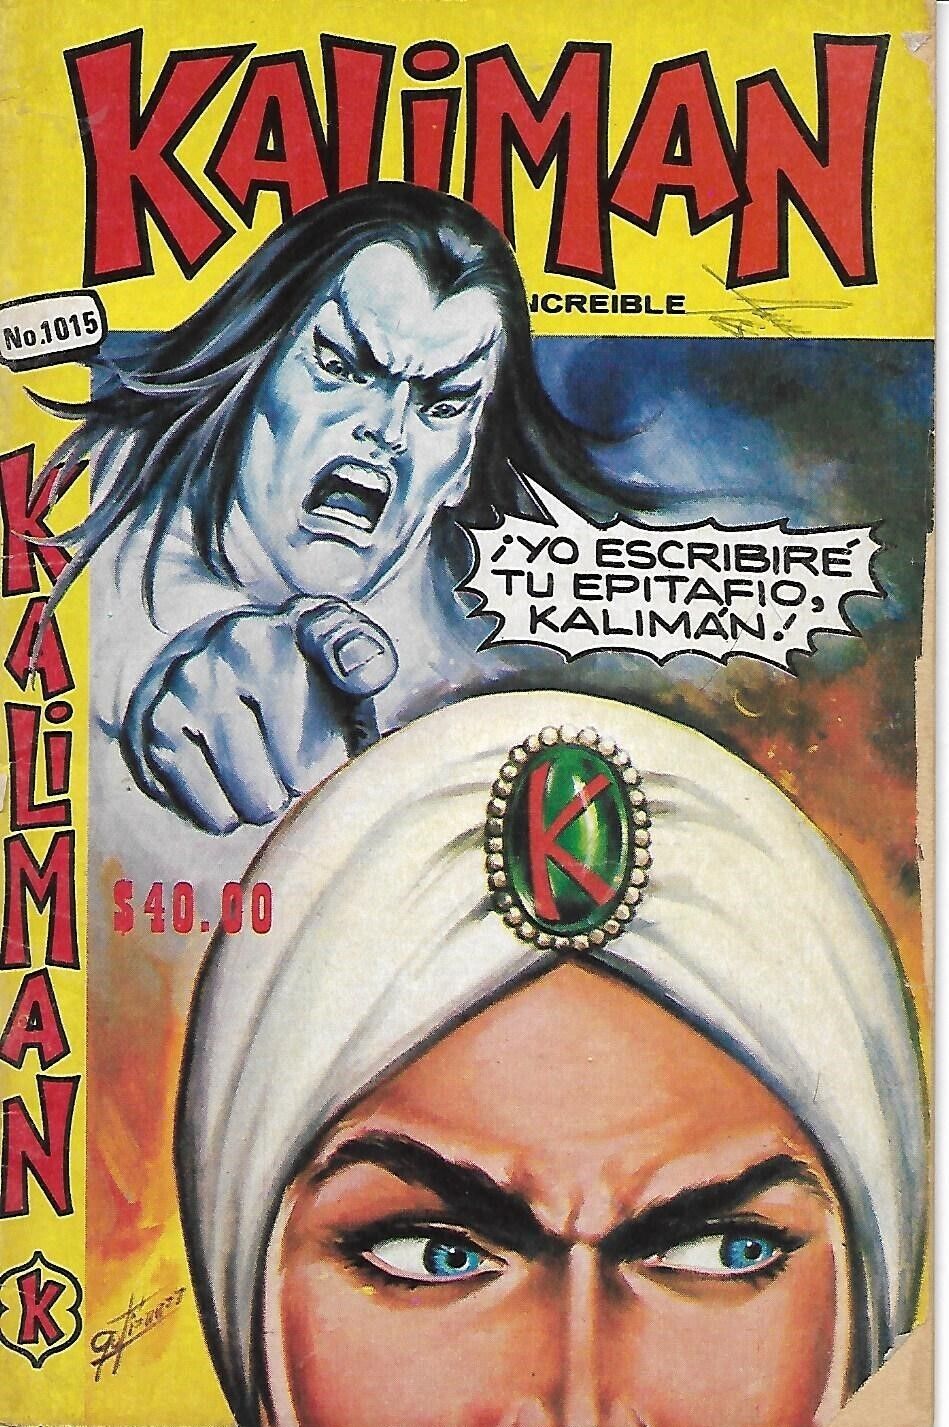 Kaliman El Hombre Increible #1015 - Mayo 10, 1985 - Mexico